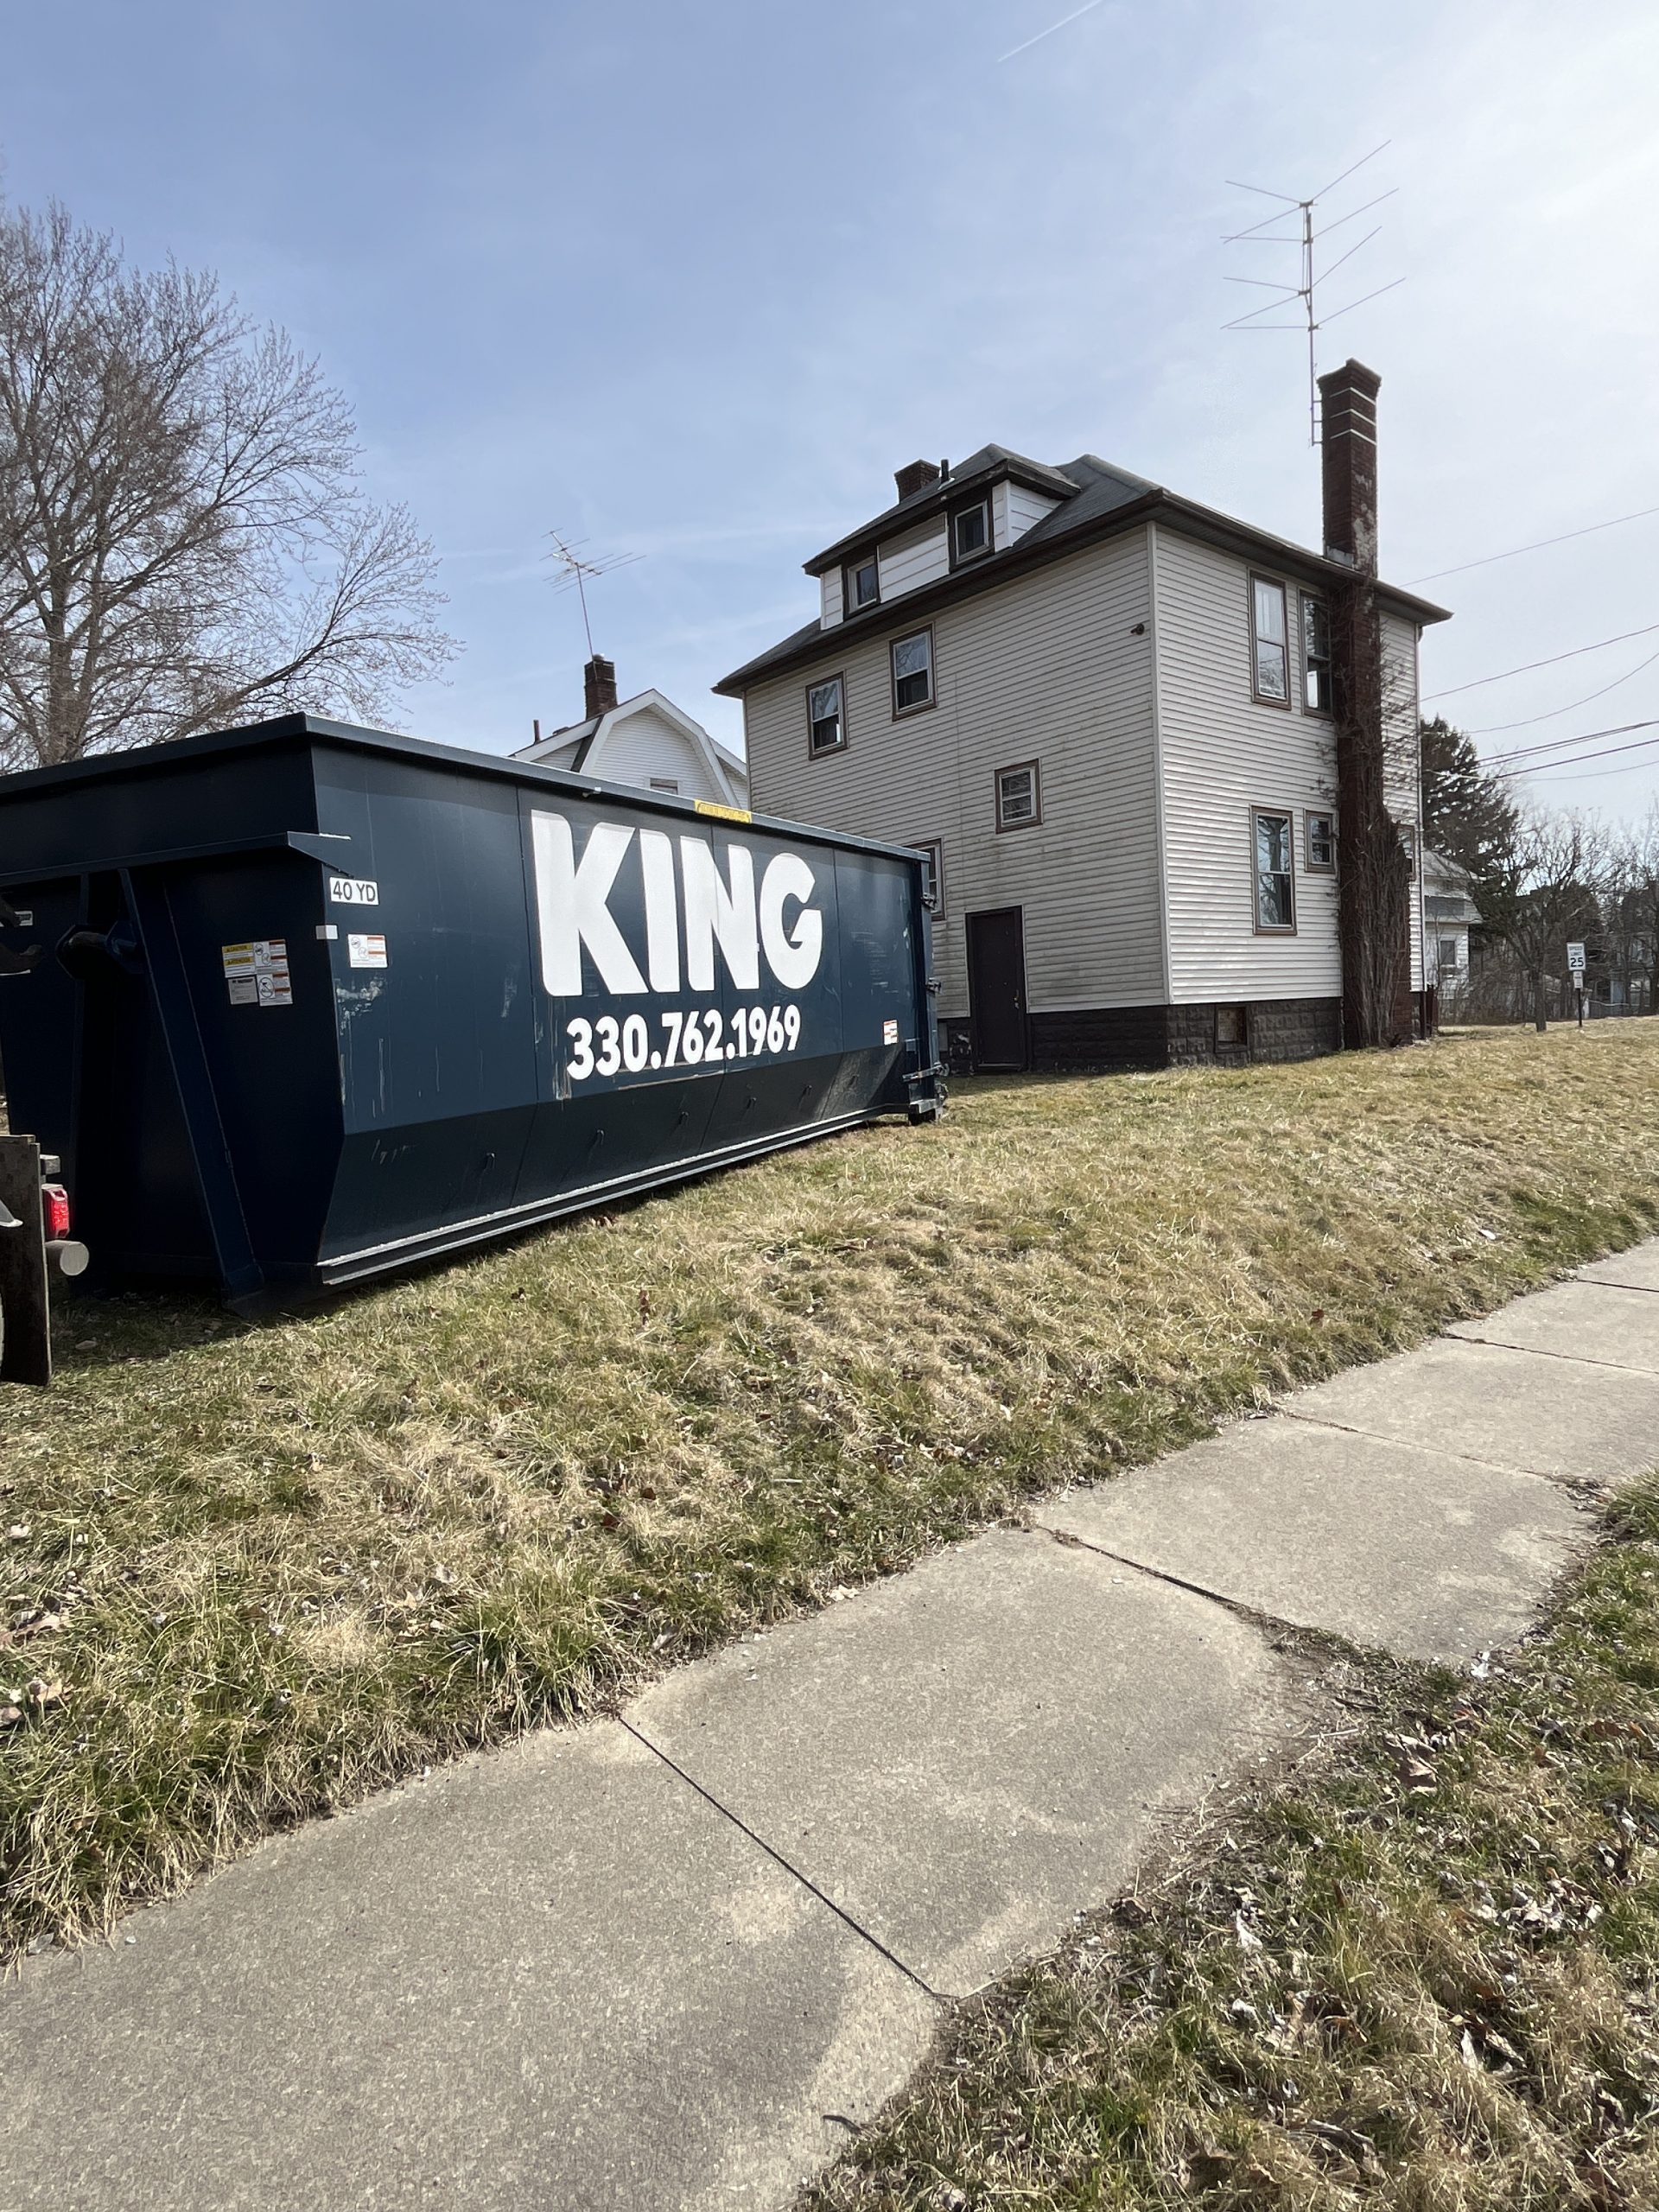 Dumpster rental in Parma, ohio